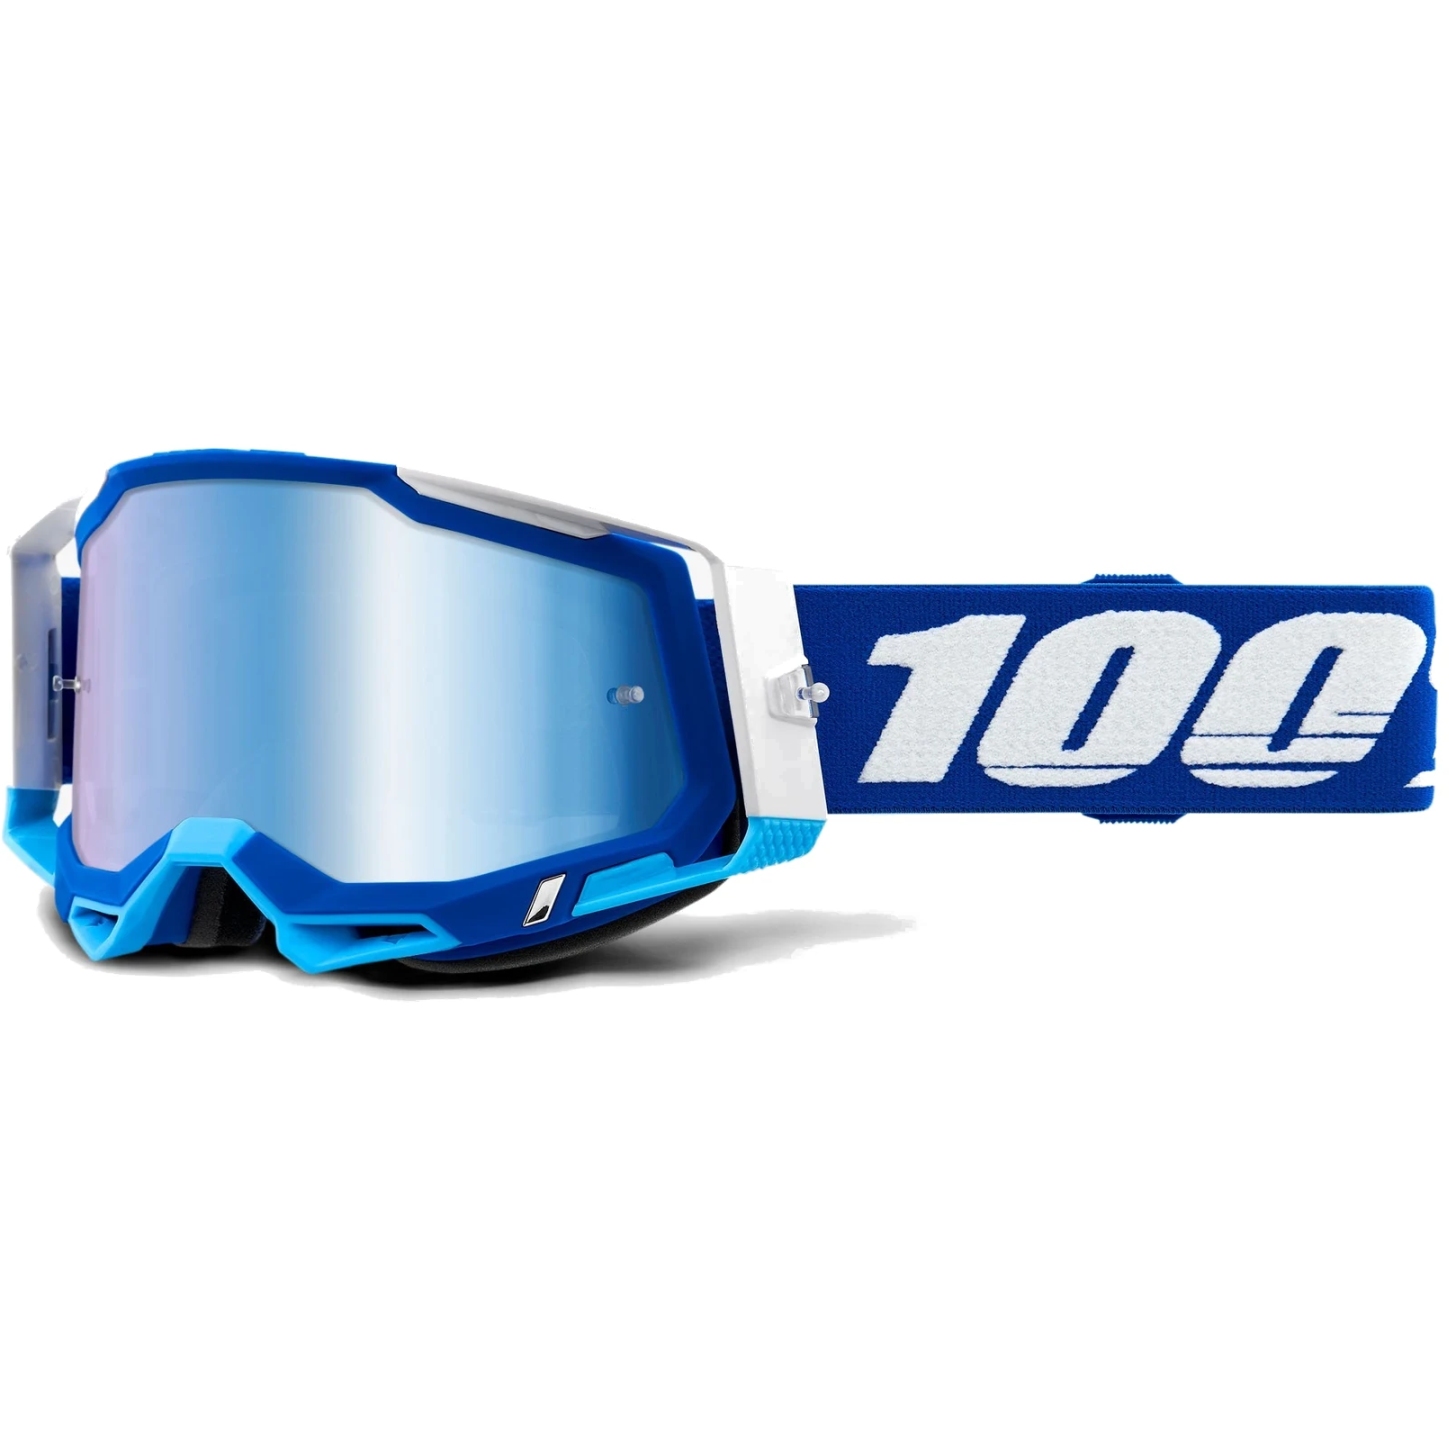 Bild von 100% Racecraft 2 Goggle - Mirror Lens - Blue / Blue + Clear